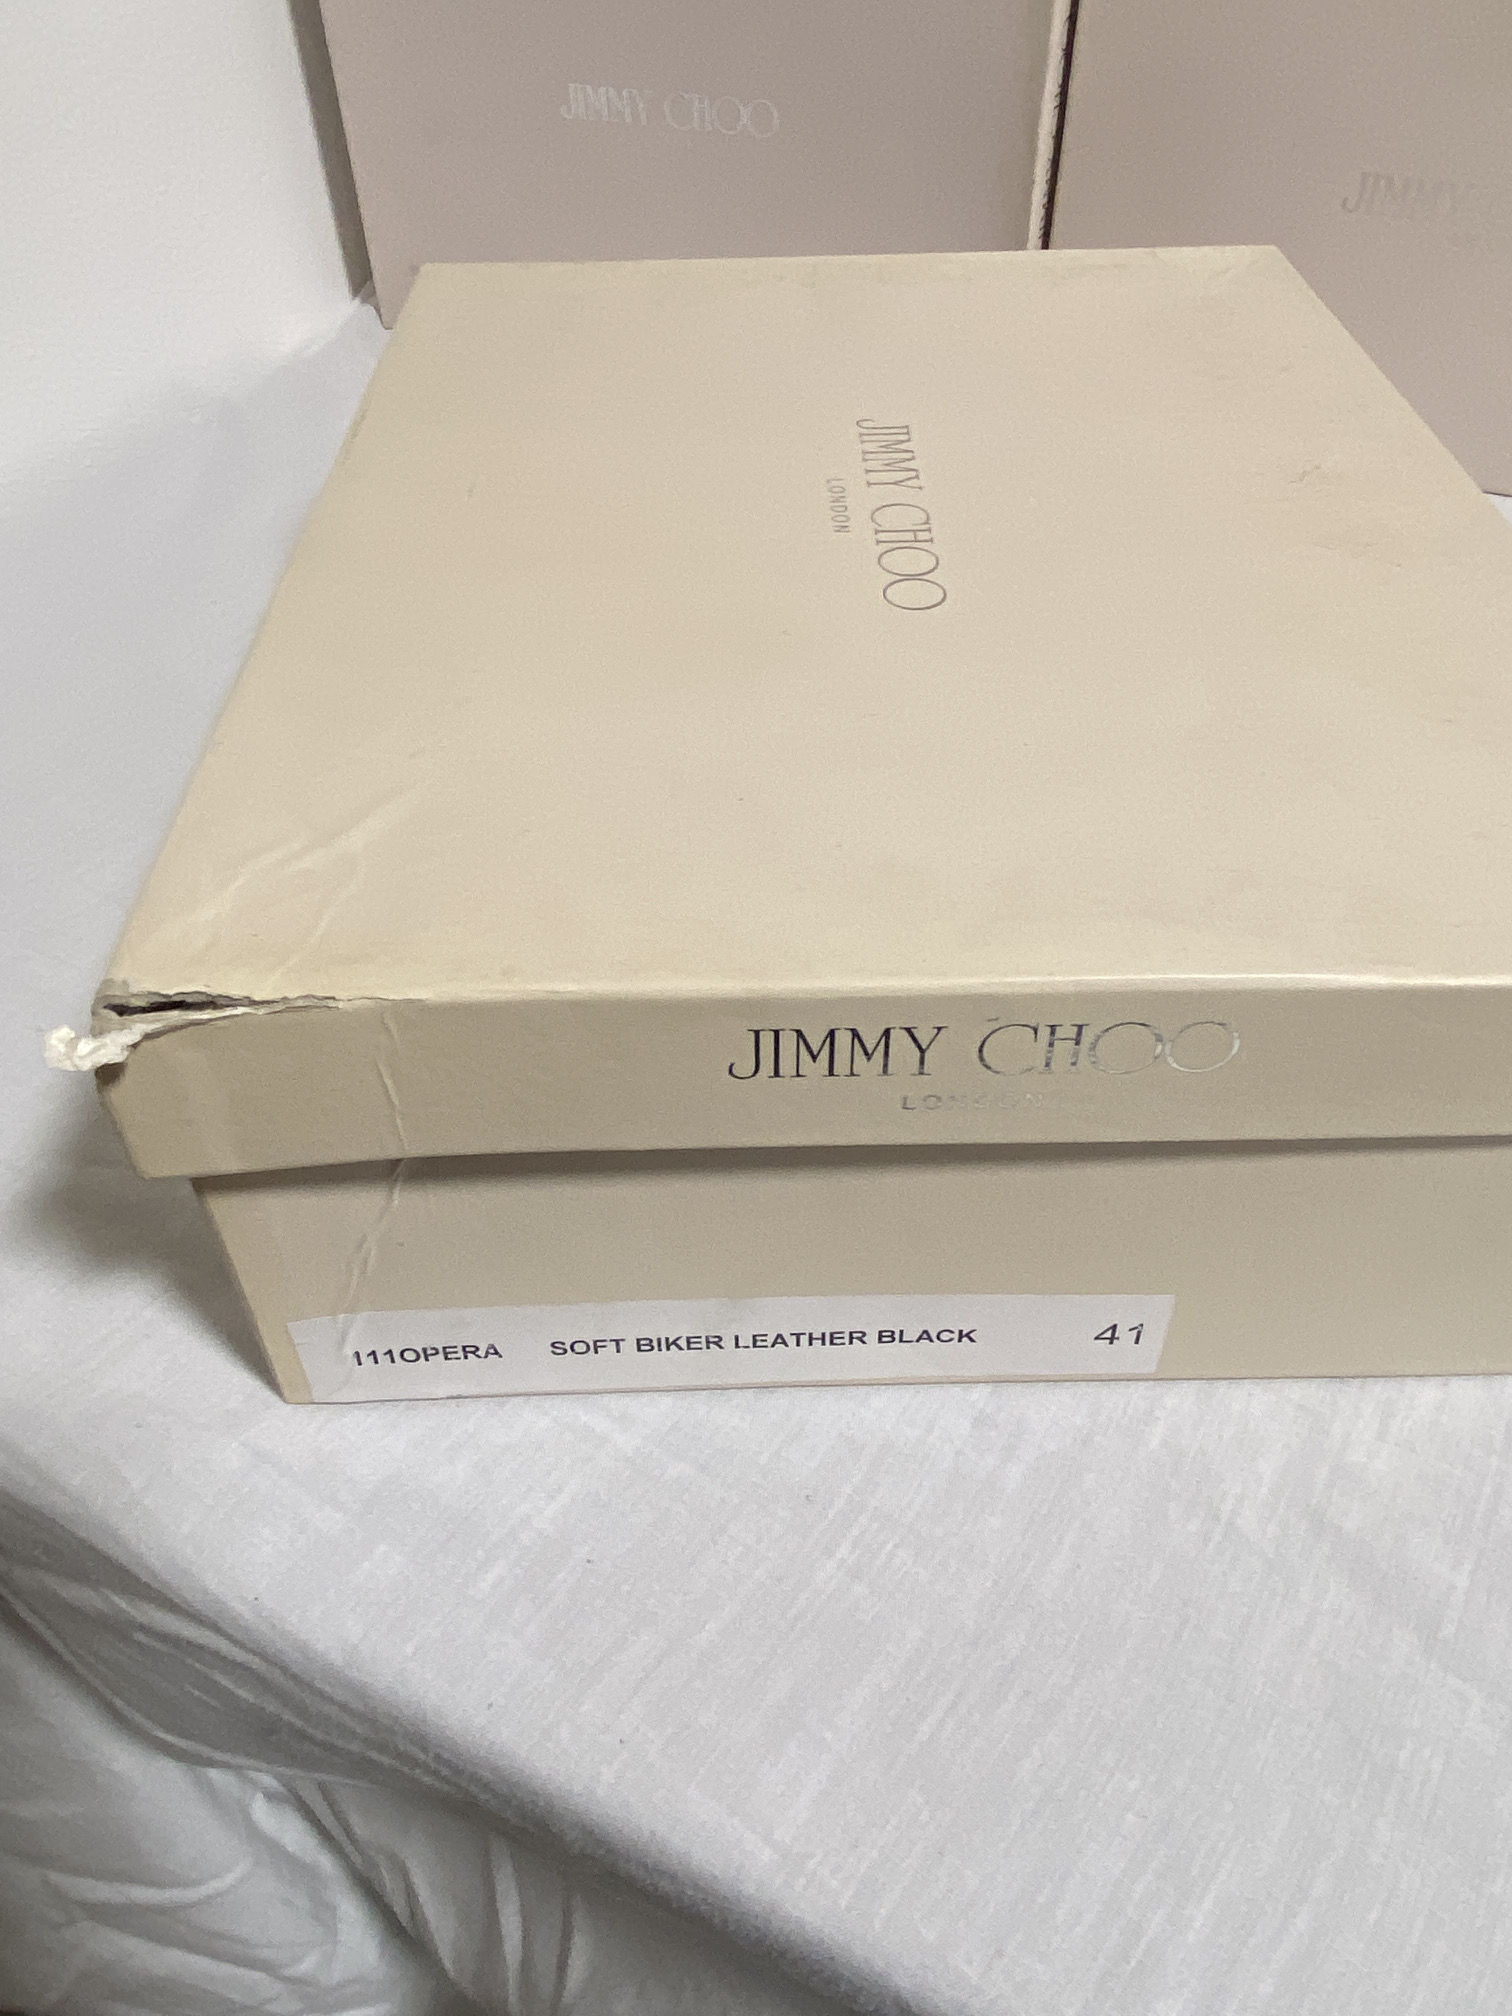 JIMMY CHOO (LONDON) LADIES SHOES / FOOTWEAR (BOXED IN VGC) - Image 2 of 10